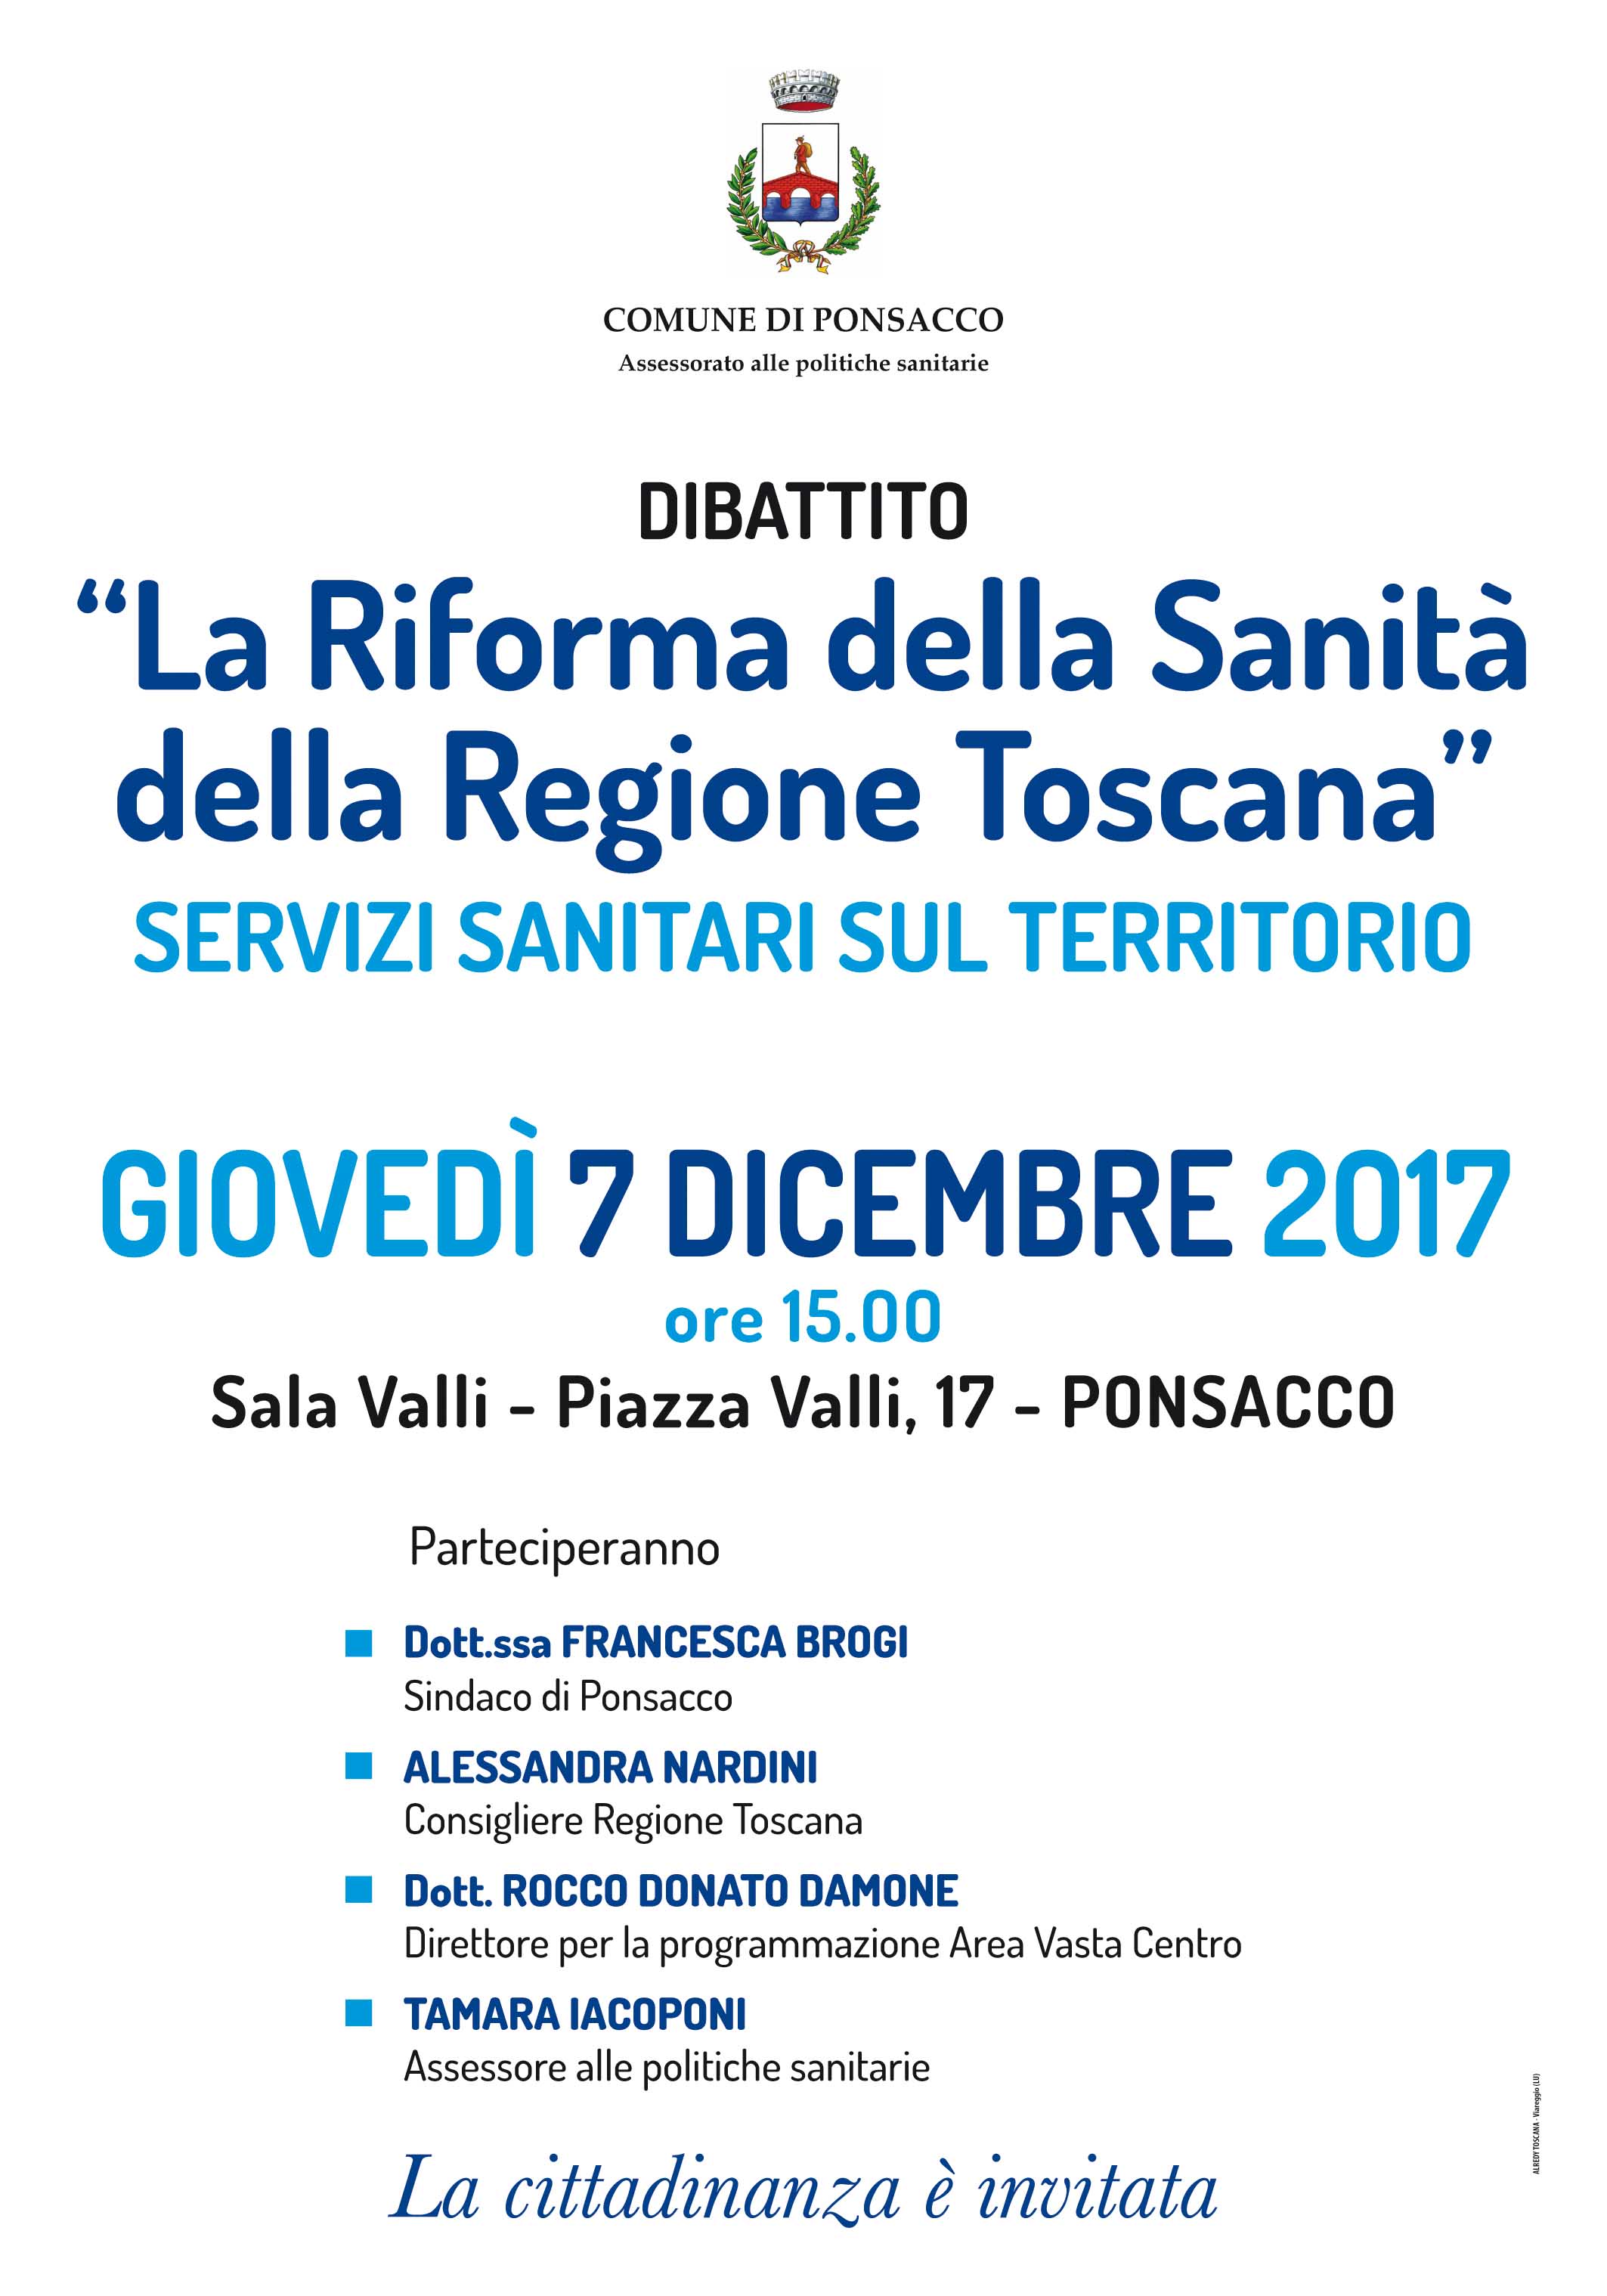 Dibattito - La Riforma della Sanità della Regione Toscana - Servizi sanitari sul territorio